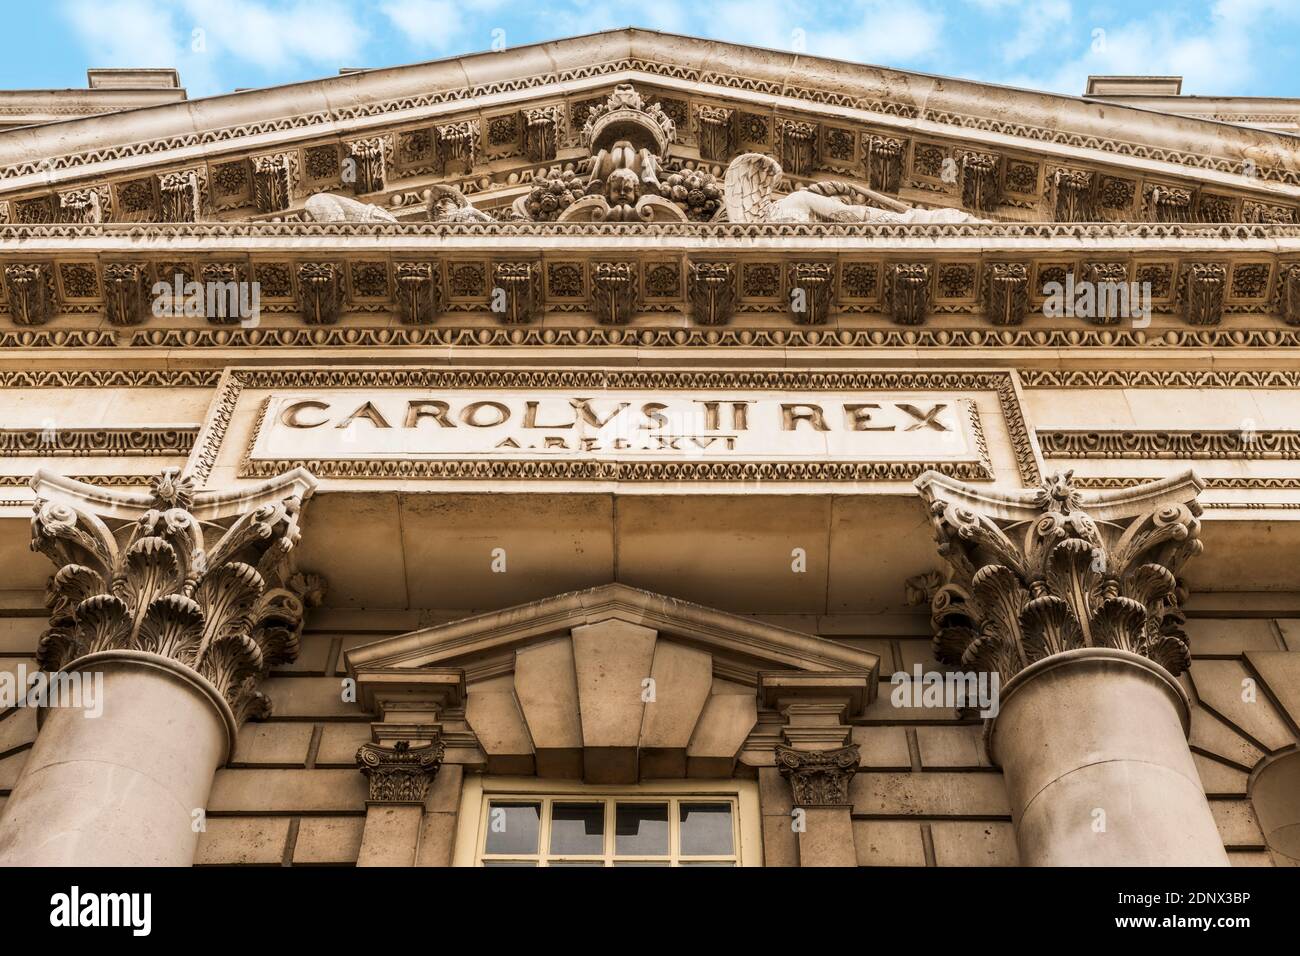 Carolus II Rex - la imponente fachada barroca del antiguo Royal College en Greenwich Park, Londres. Foto de stock